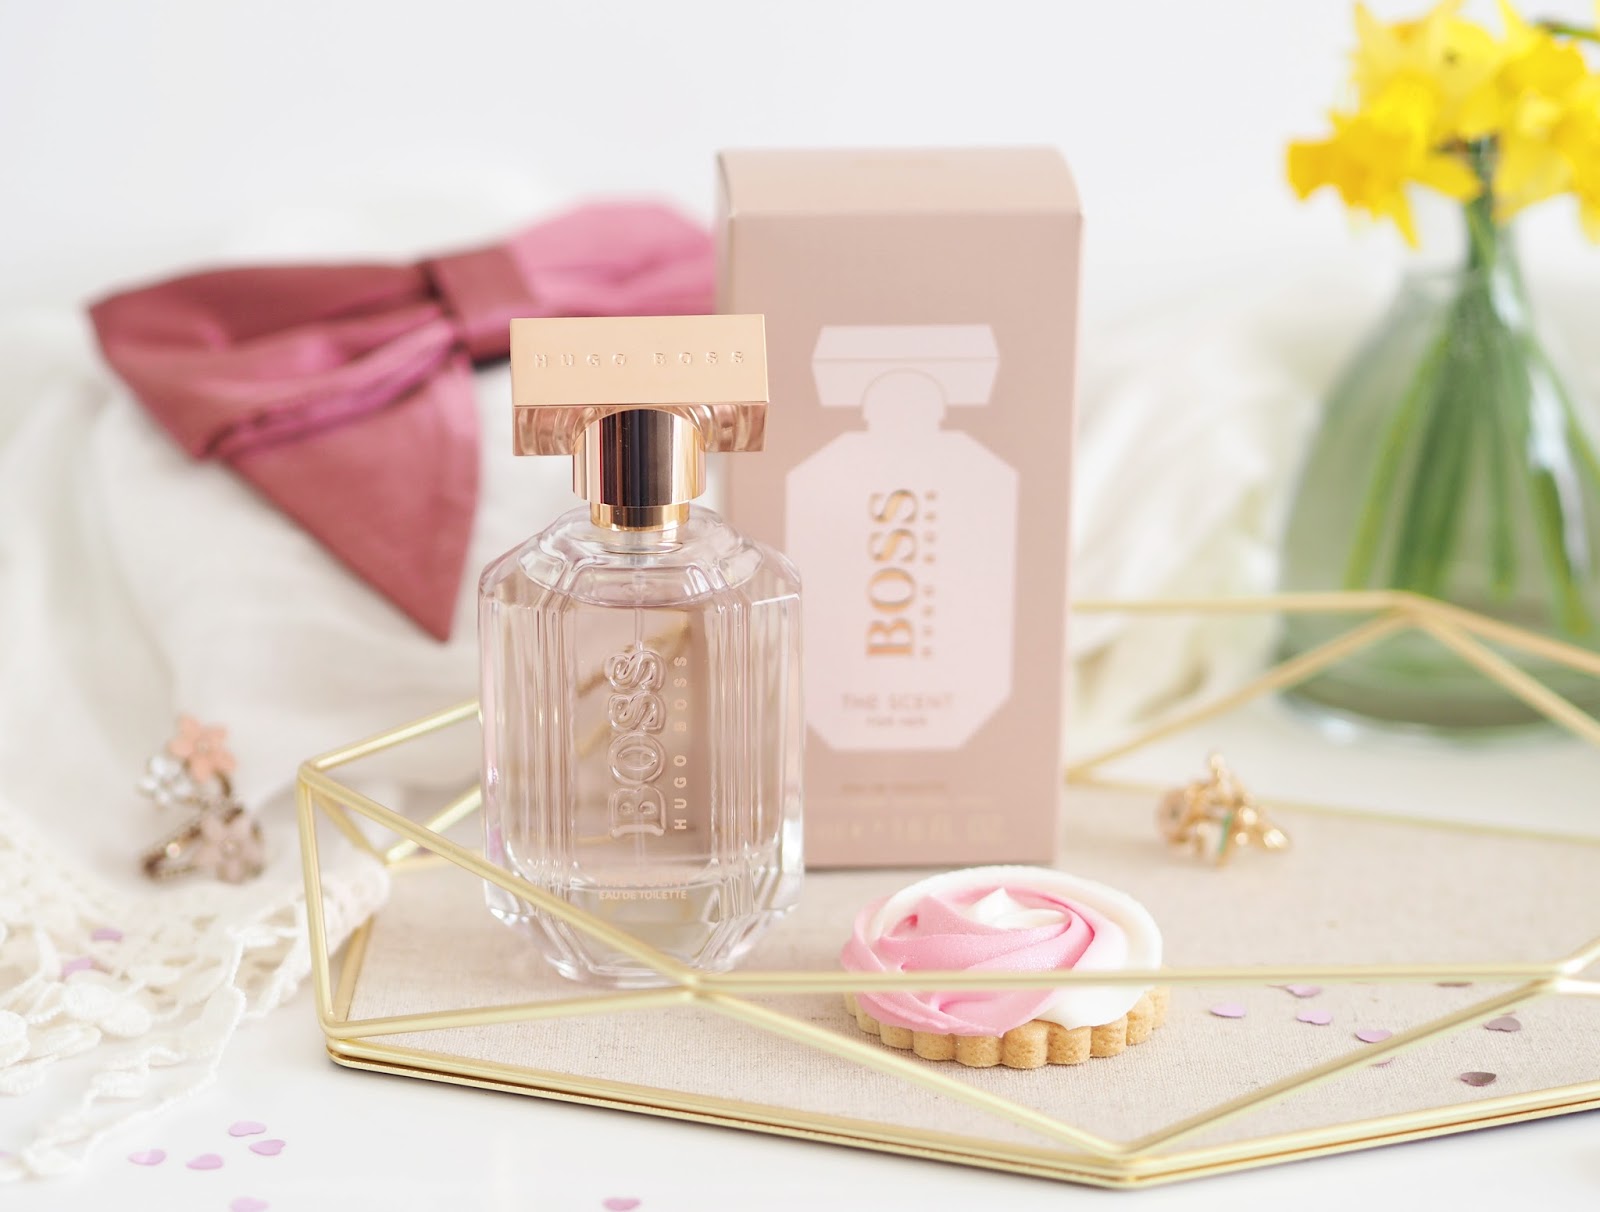 Spring Fragrance Edit, Katie Kirk Loves, UK Blogger, Beauty Blogger, Fragrance Blogger, Spring Scents, Spring Perfume, Fragrance Direct, Spring Ready, 5 Scents For Spring, Floral Fragrances